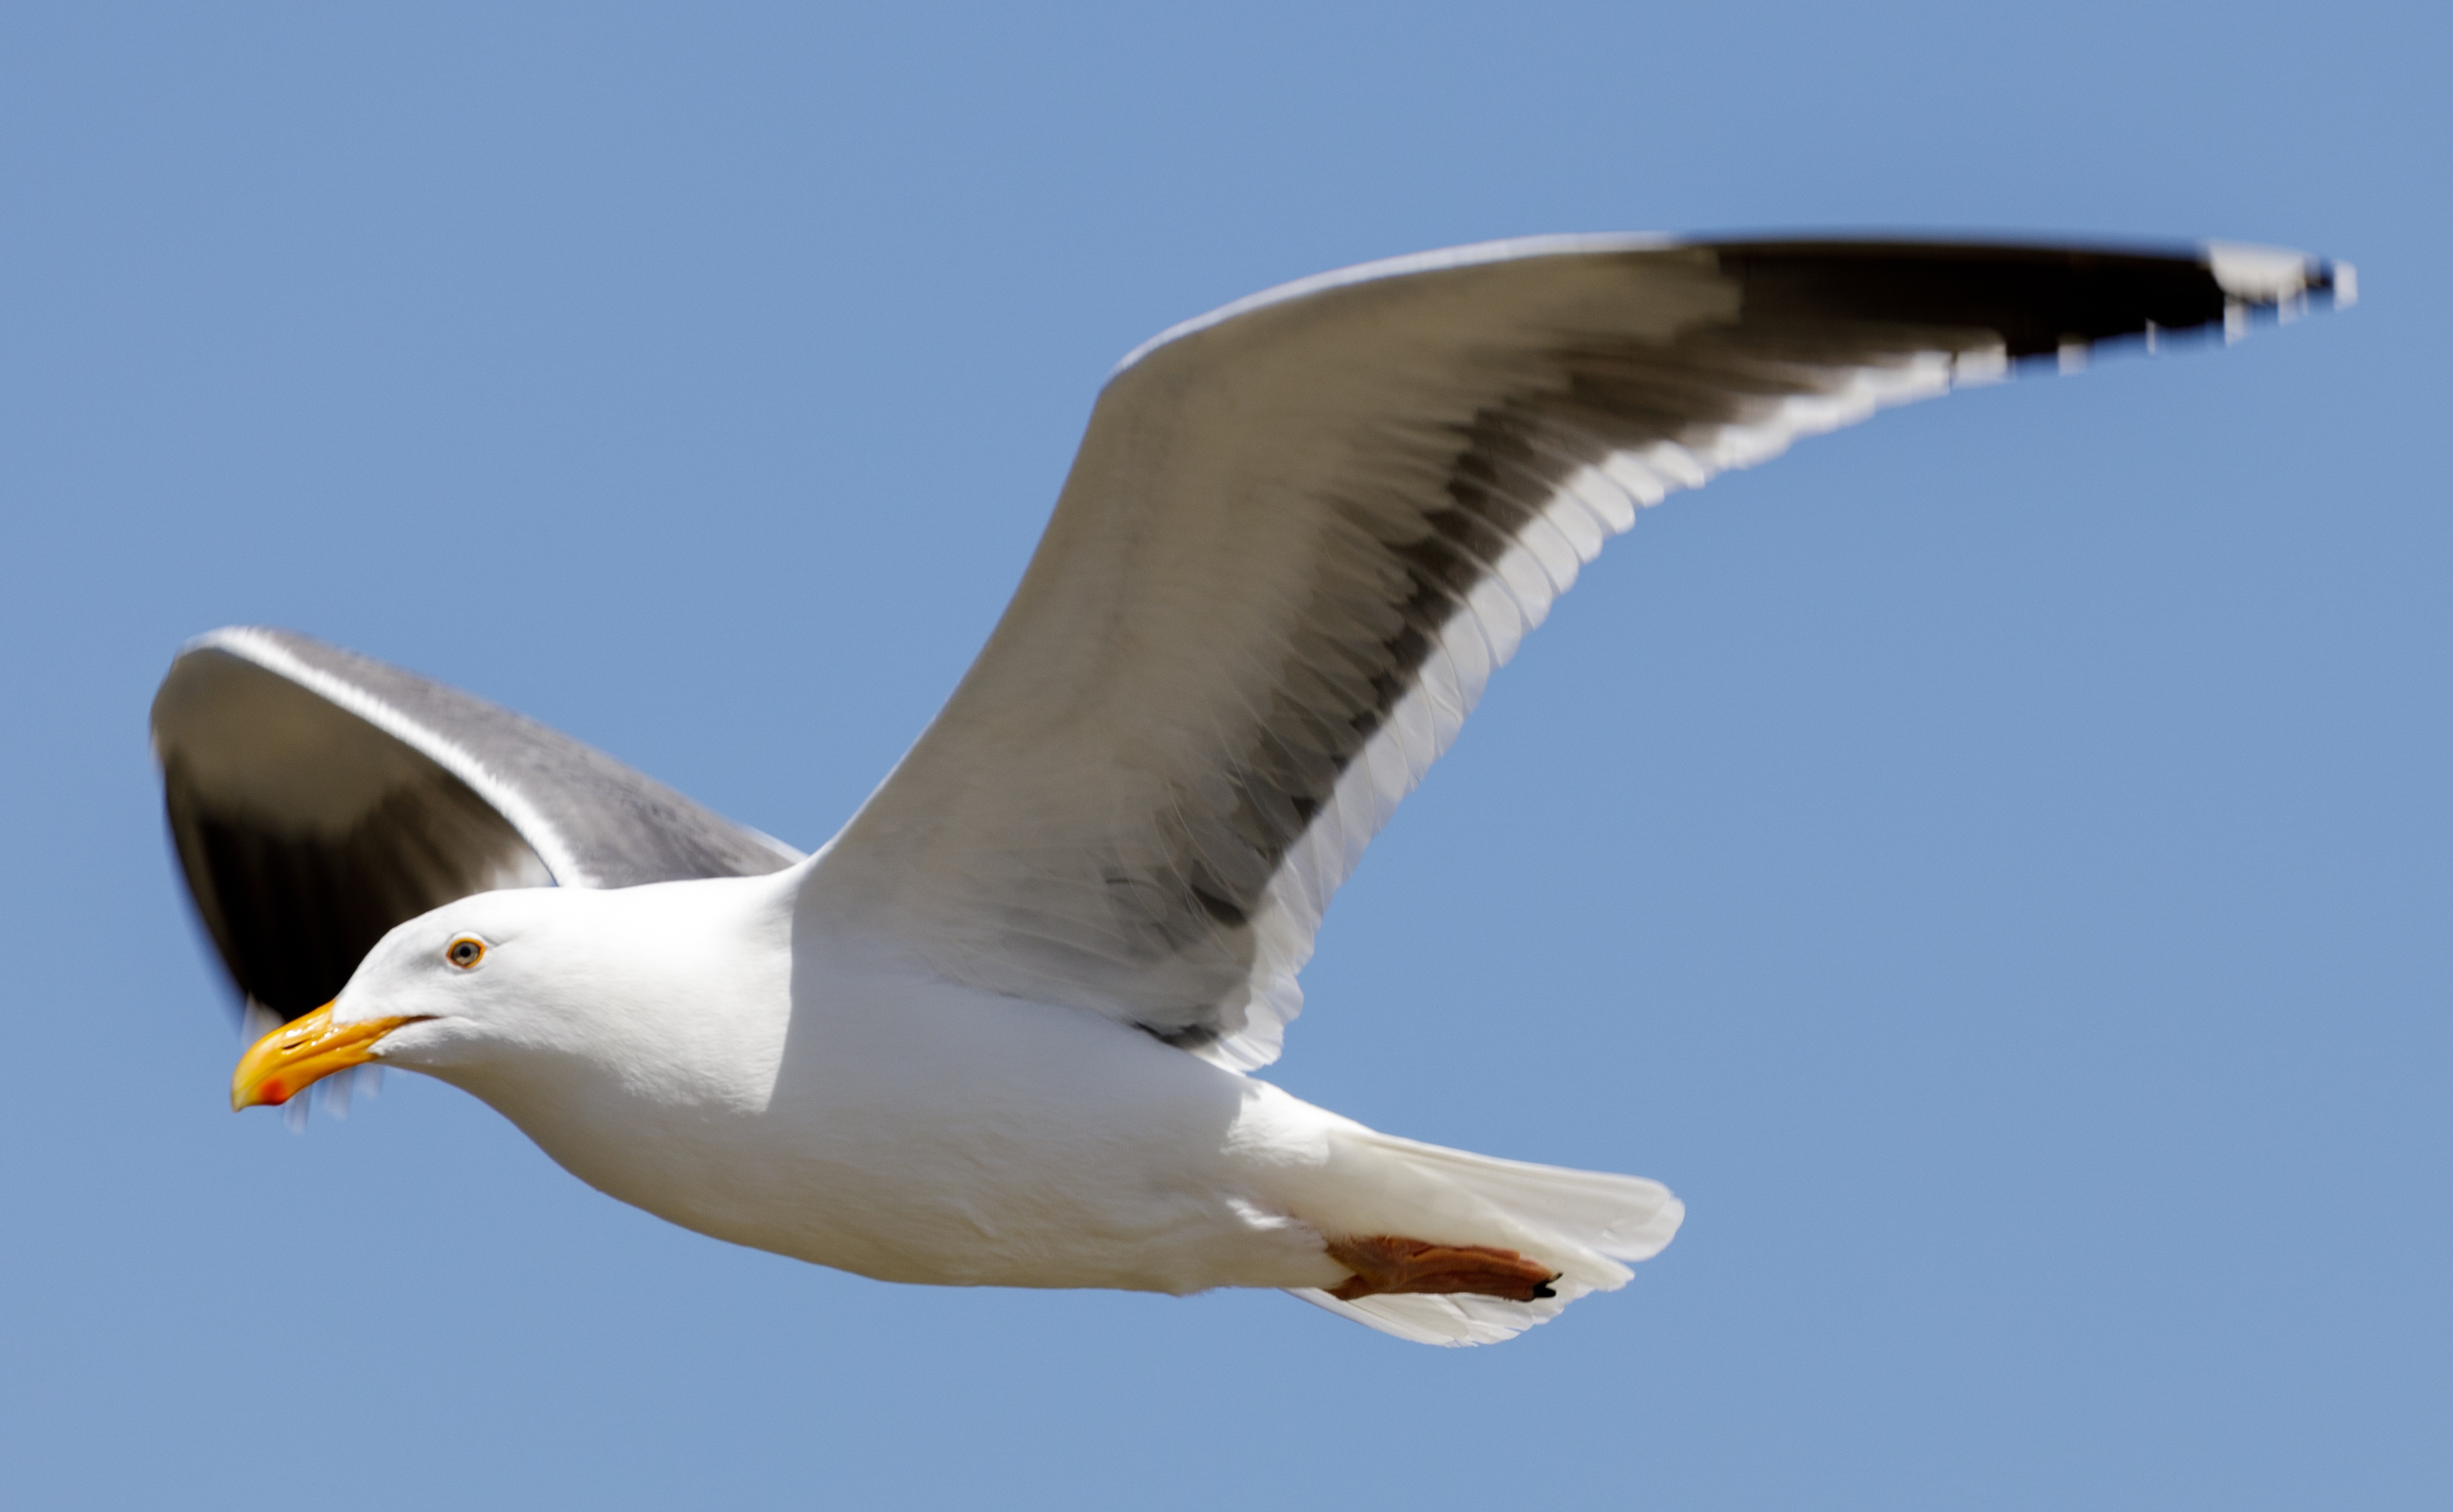 Seagulls that 'fear no man' plague Boston restaurant